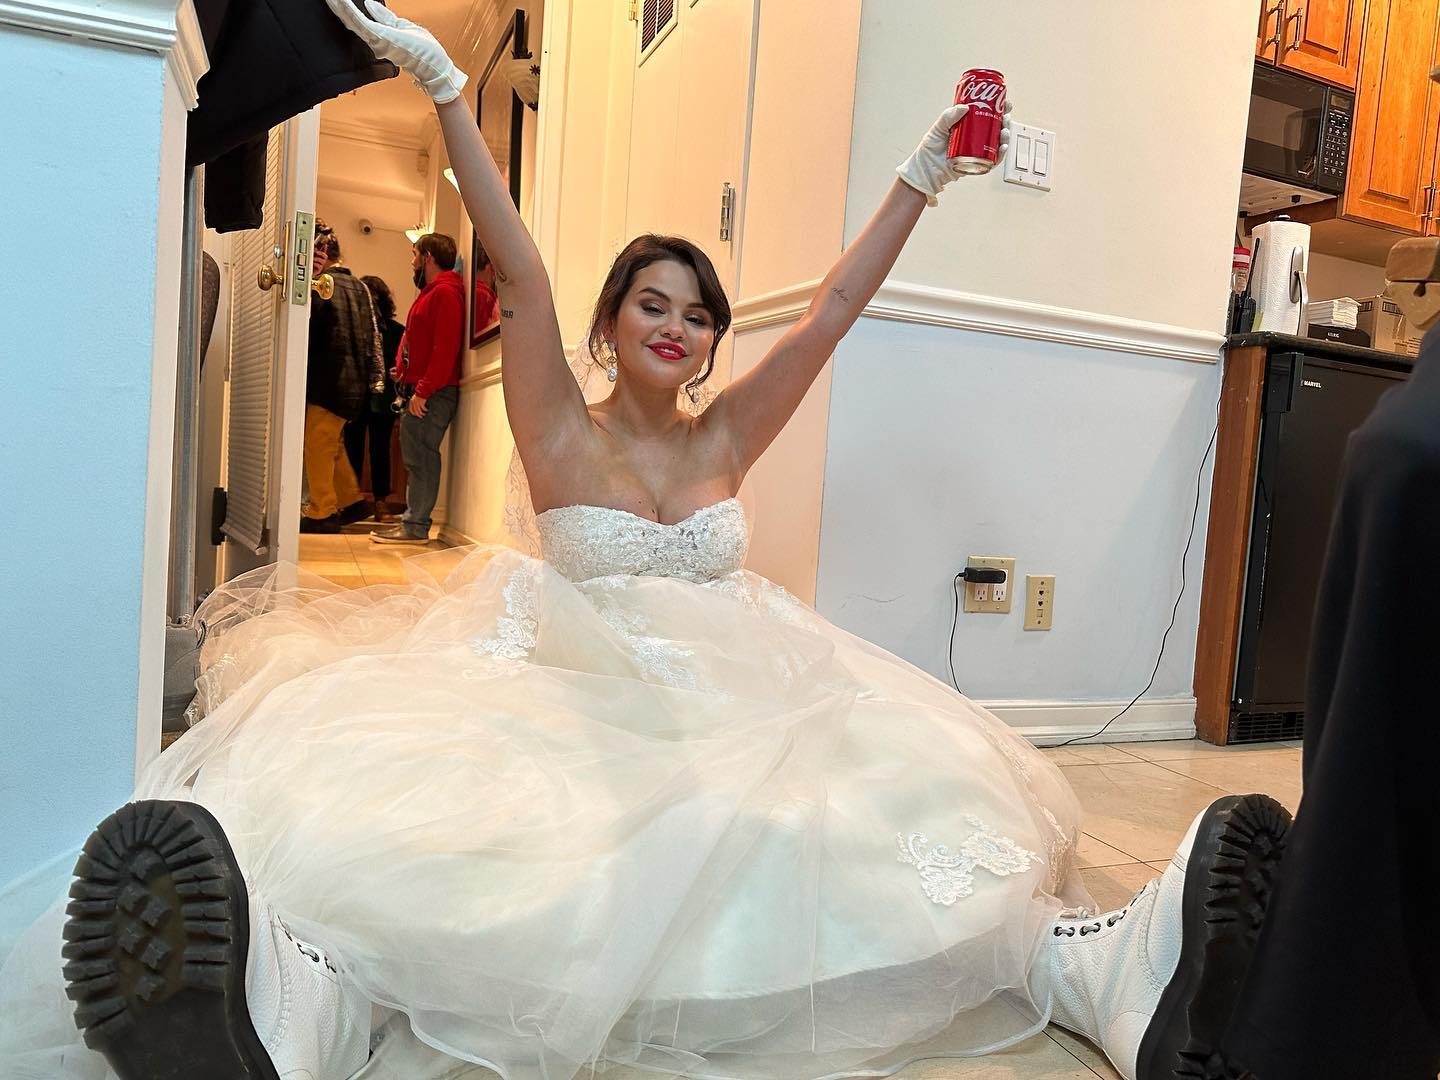 PHOTOS Alerte spoiler: Selena Gomez porte une robe de mariée au travail!